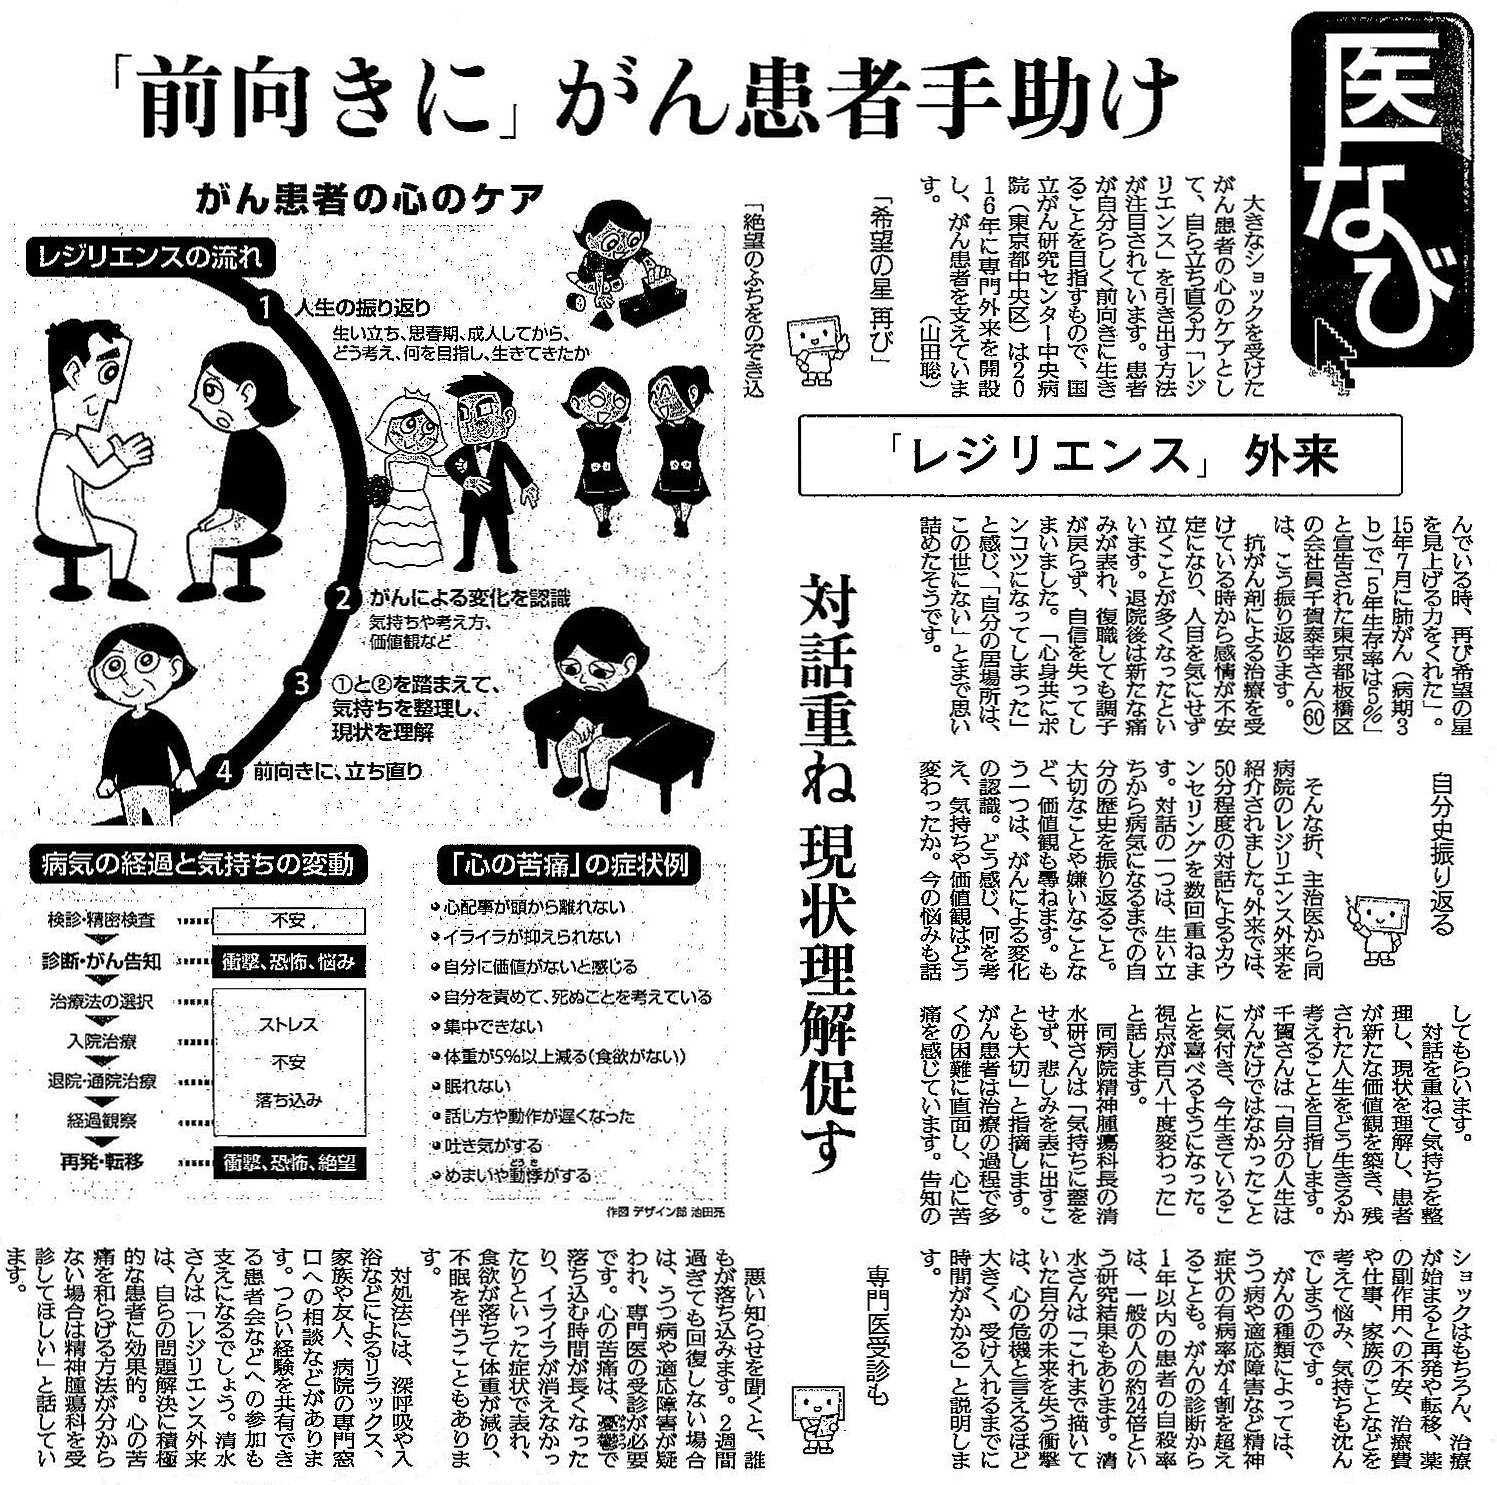 読売新聞 2019年10月9日夕刊掲載